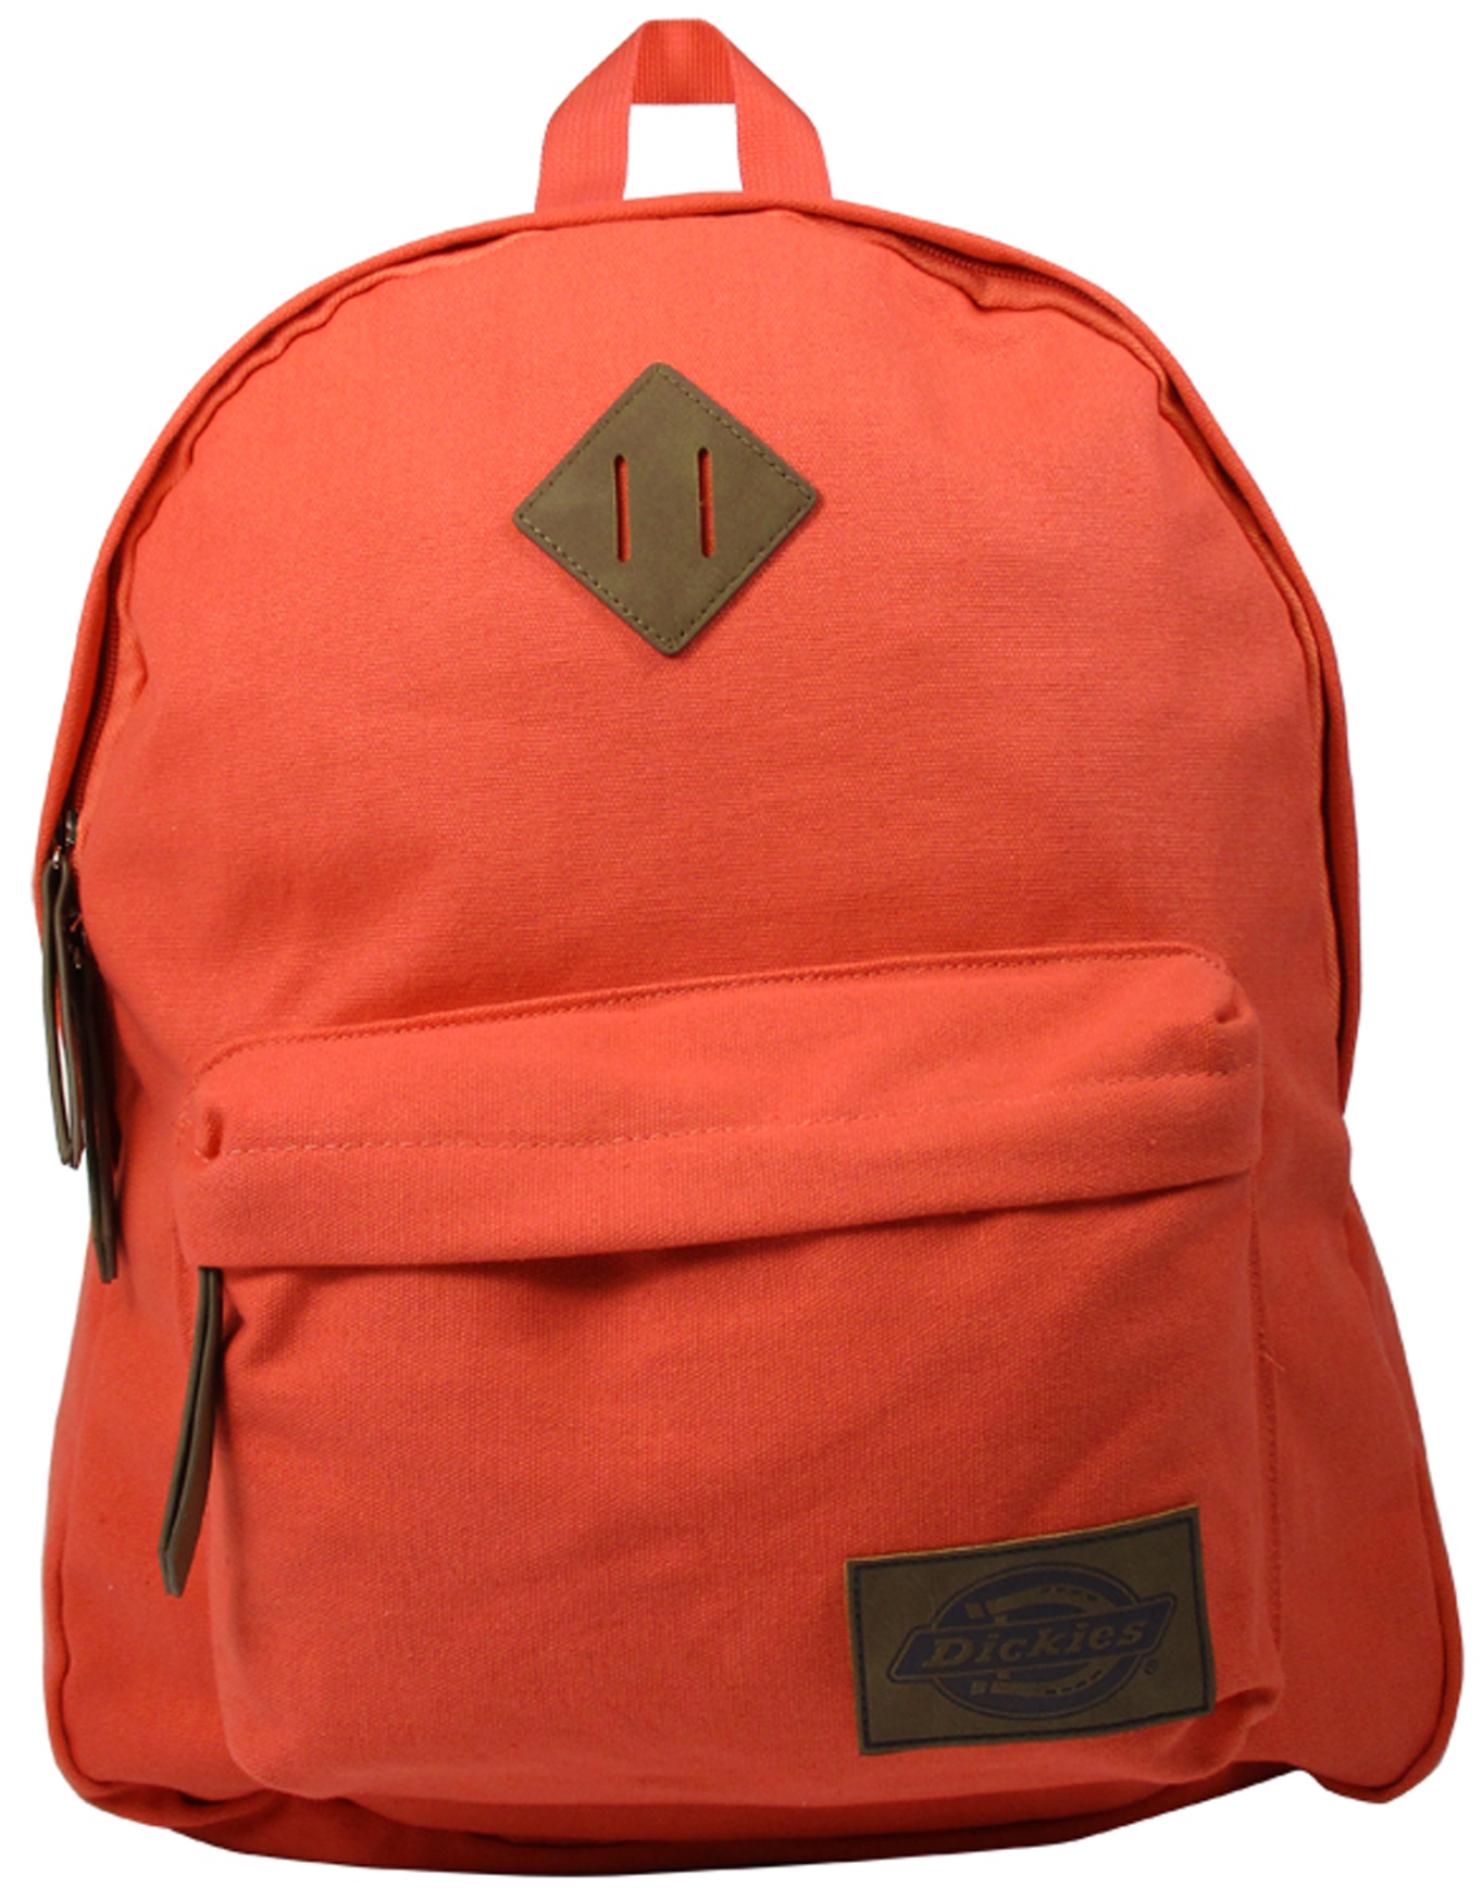 Dickies Canvas Backpack